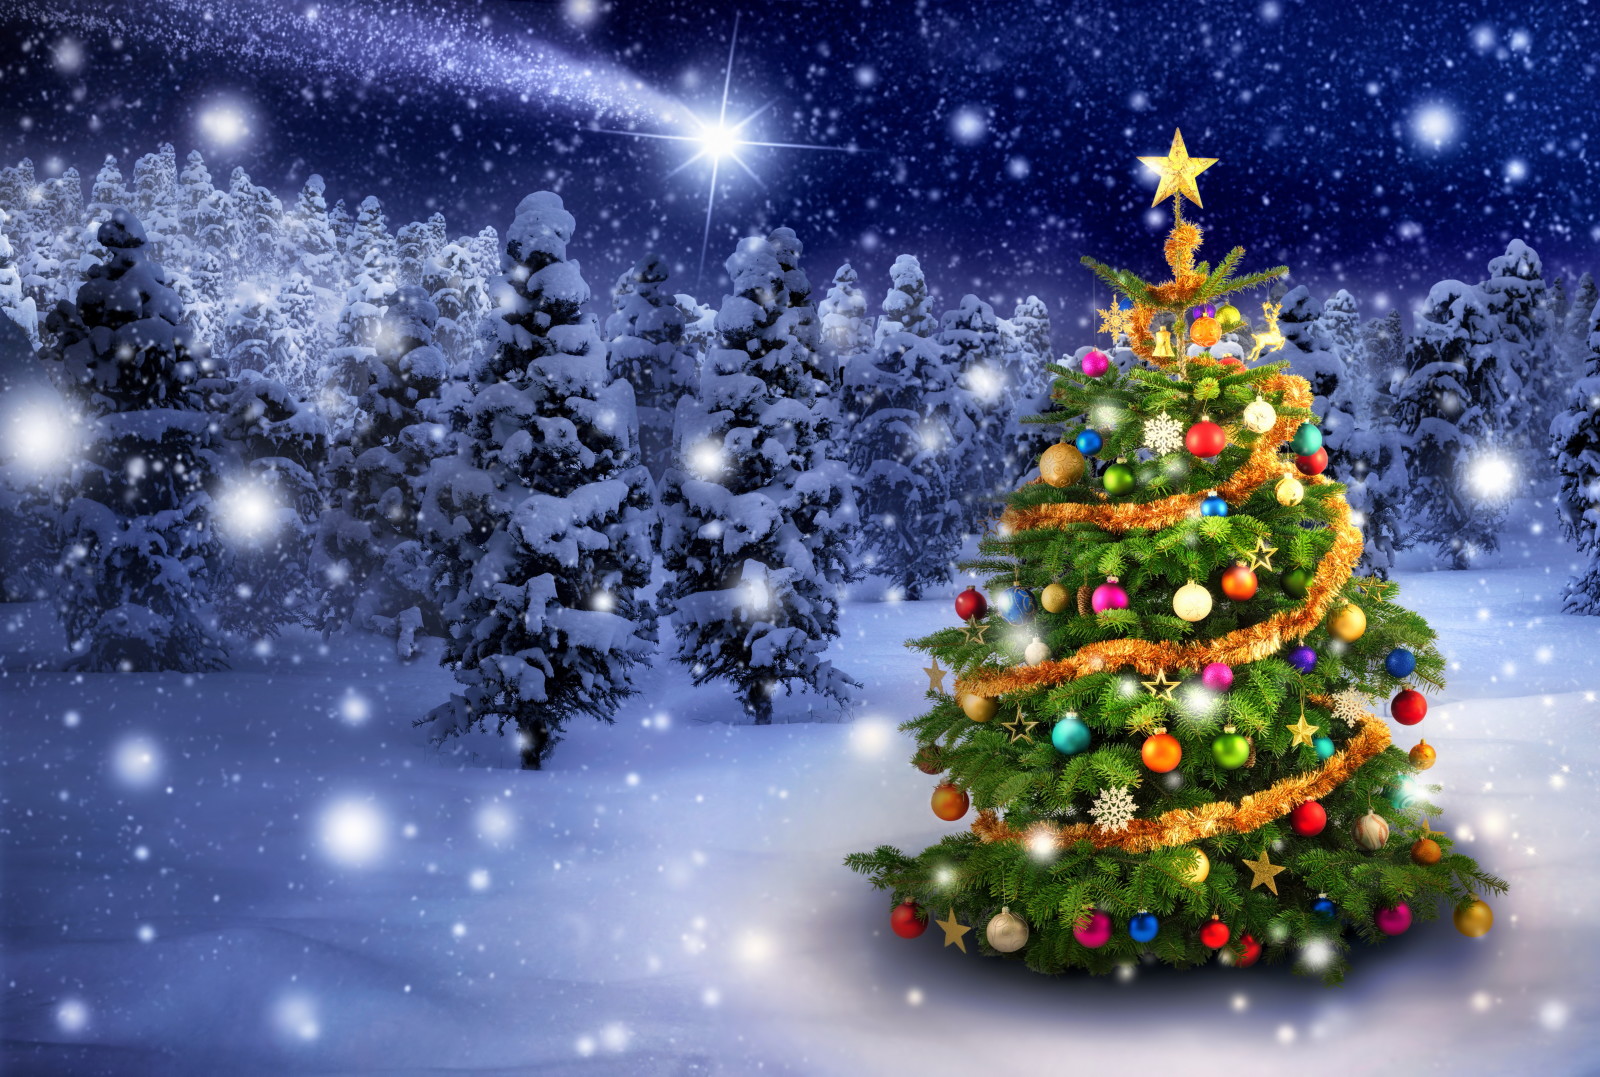 눈, 설화, 나무, 새해, 크리스마스, 장식, 명랑한, 겨울